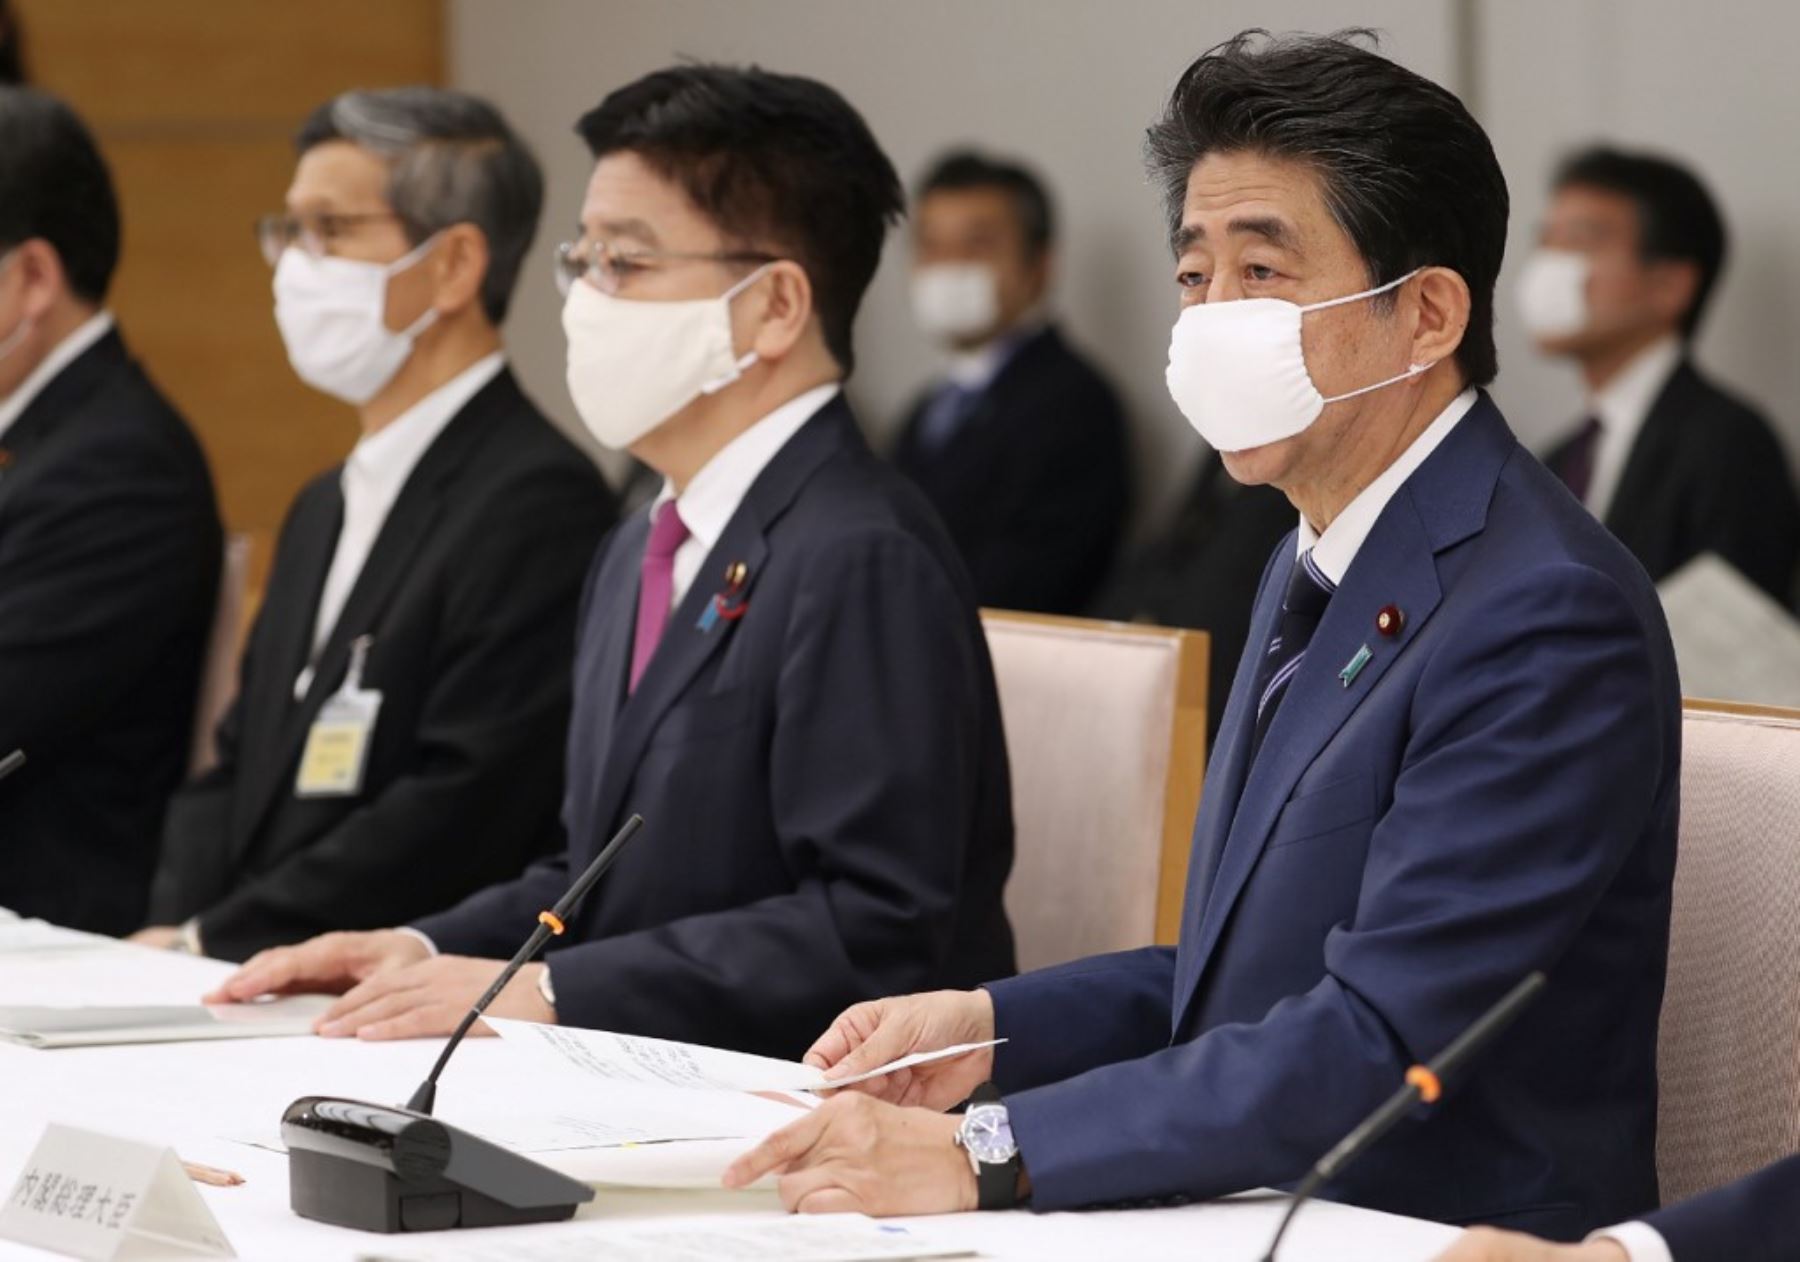 El primero en declarar el estado de emergencia, primero para Tokio y seis prefecturas y luego para todo el país, fue el ex primer ministro Shinzo Abe en abril del 2020 (Foto: Andina)